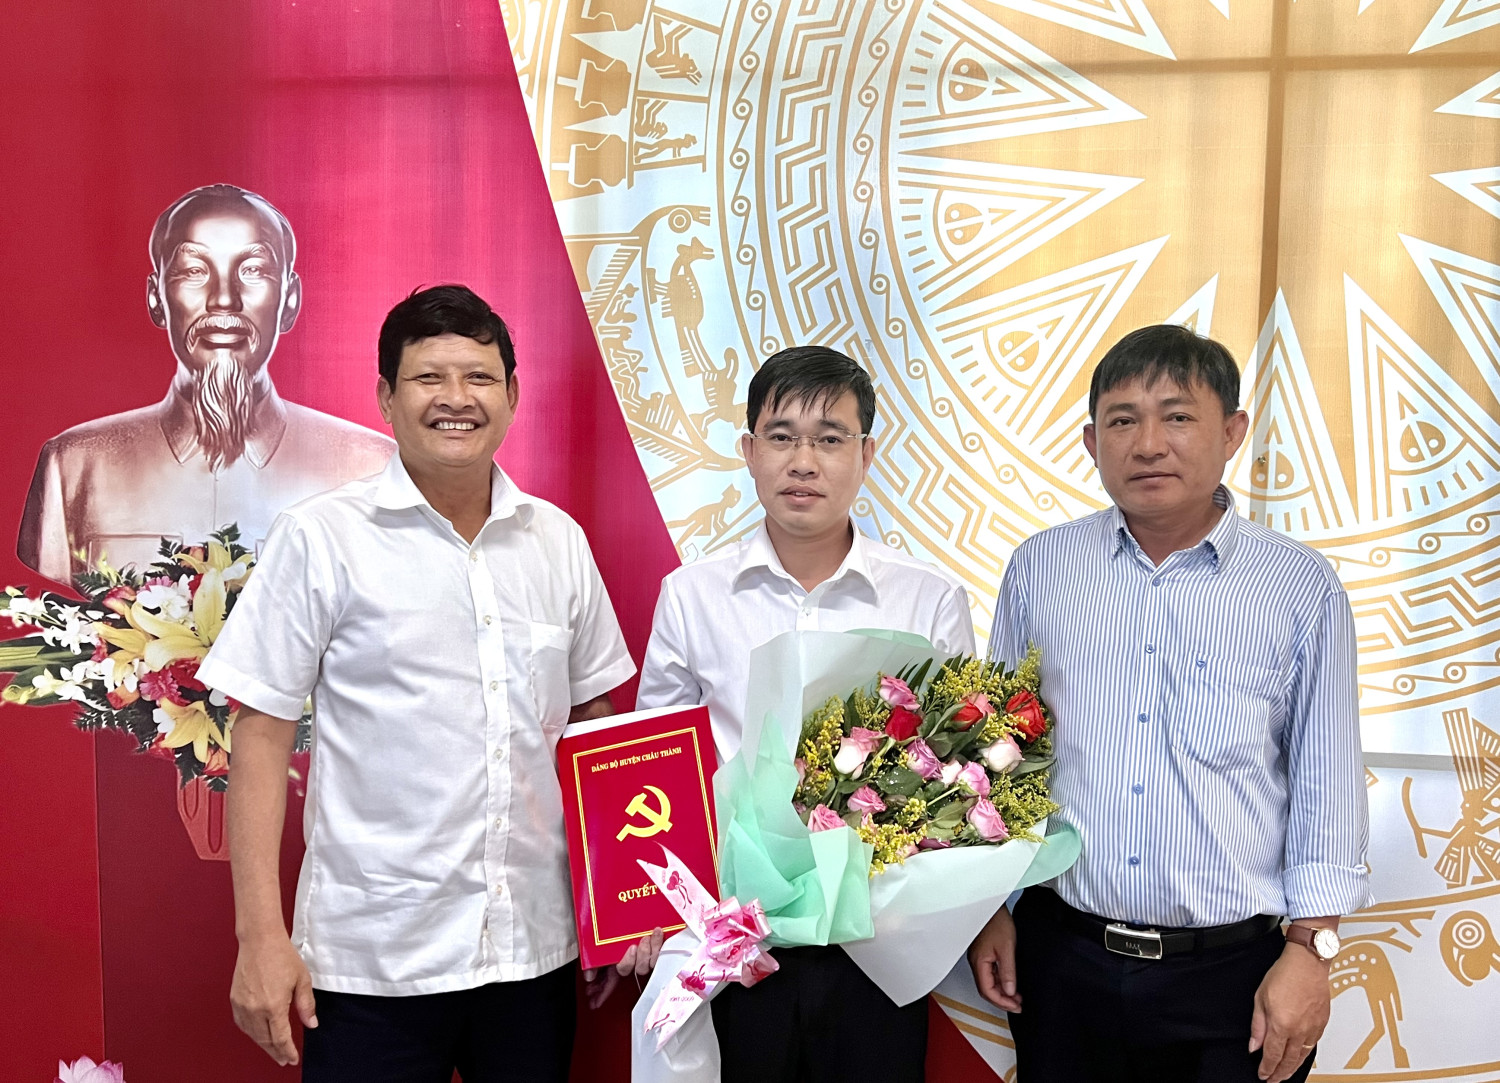 ông Nguyễn Thành Tiễn, Bí thư Huyện ủy Châu Thành (bên trái) trao quyết định cho đồng chí Phạm Thanh Phong